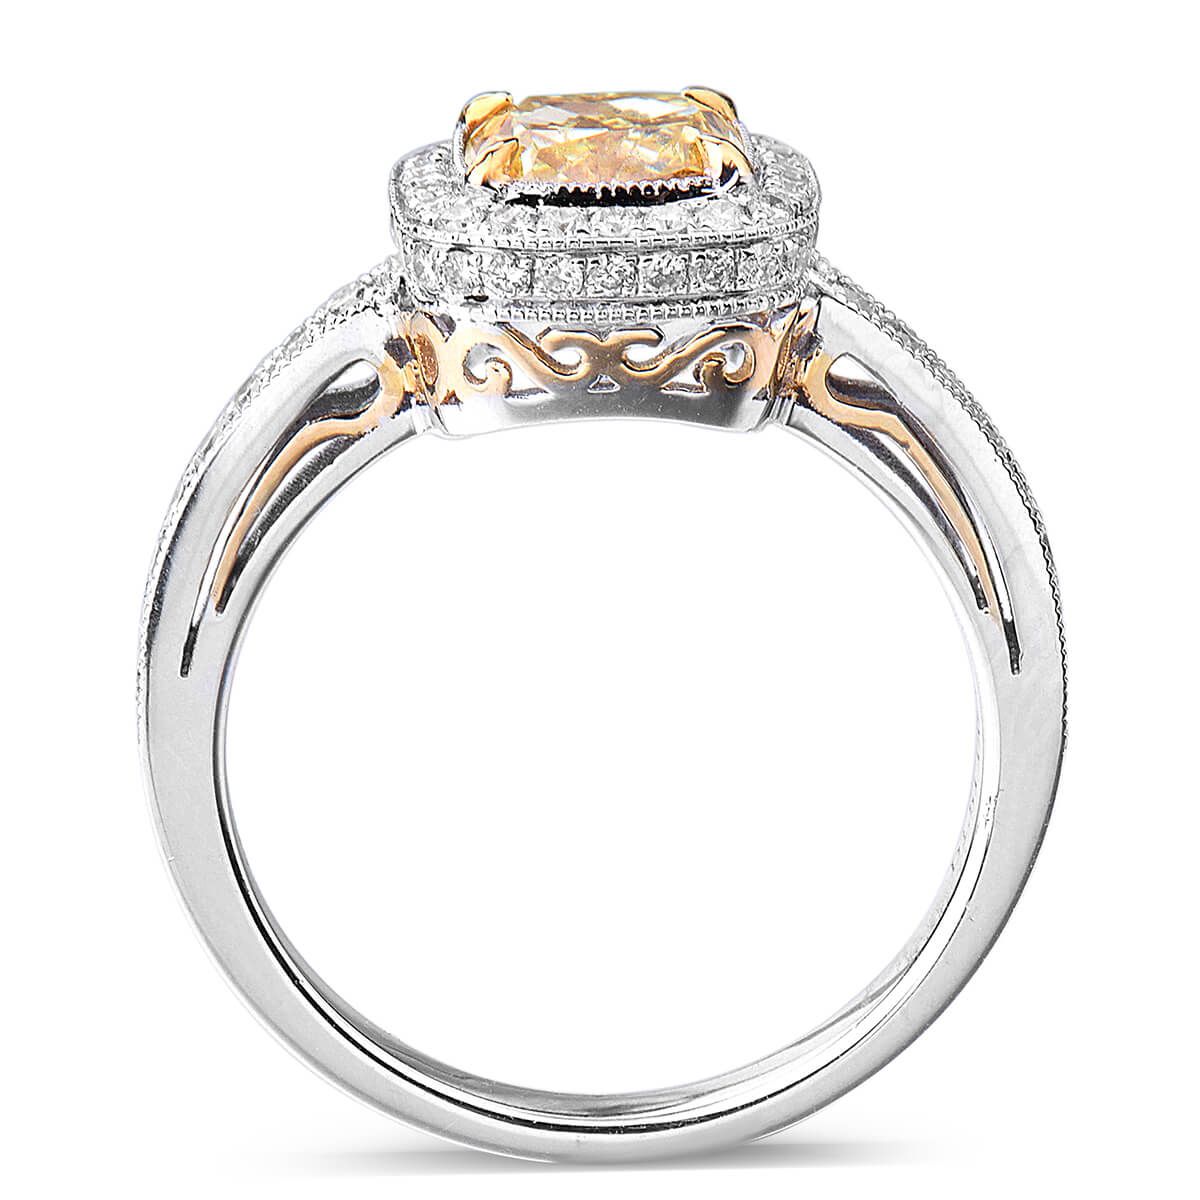 Fancy Intense Yellow Diamond Ring, 1.51 Ct. (1.93 Ct. TW), Cushion shape, GIA Certified, 5171240553